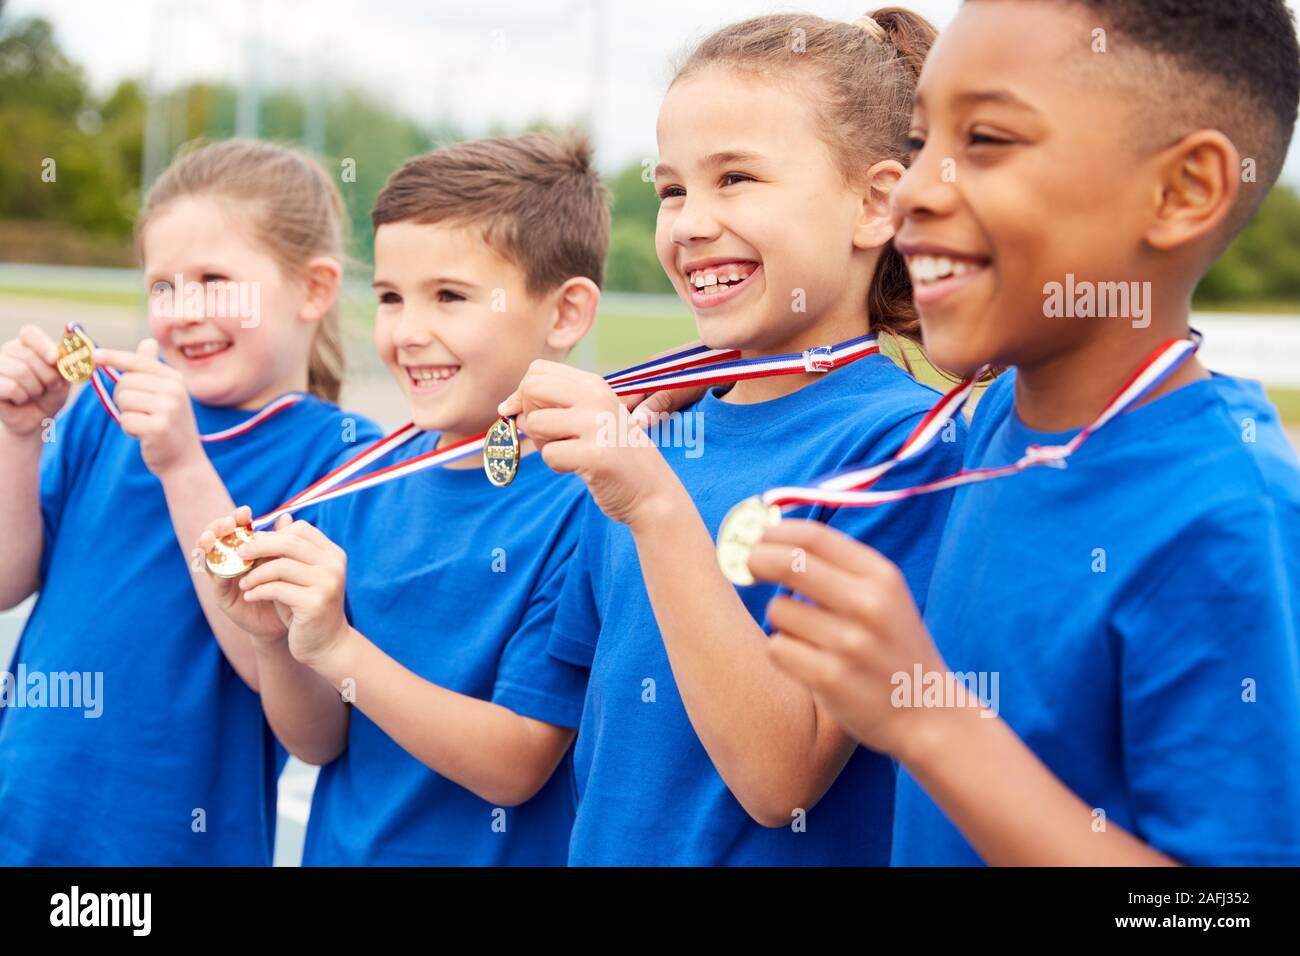 Les enfants montrant outre de gagnants de médailles sur la Journée des sports Banque D'Images